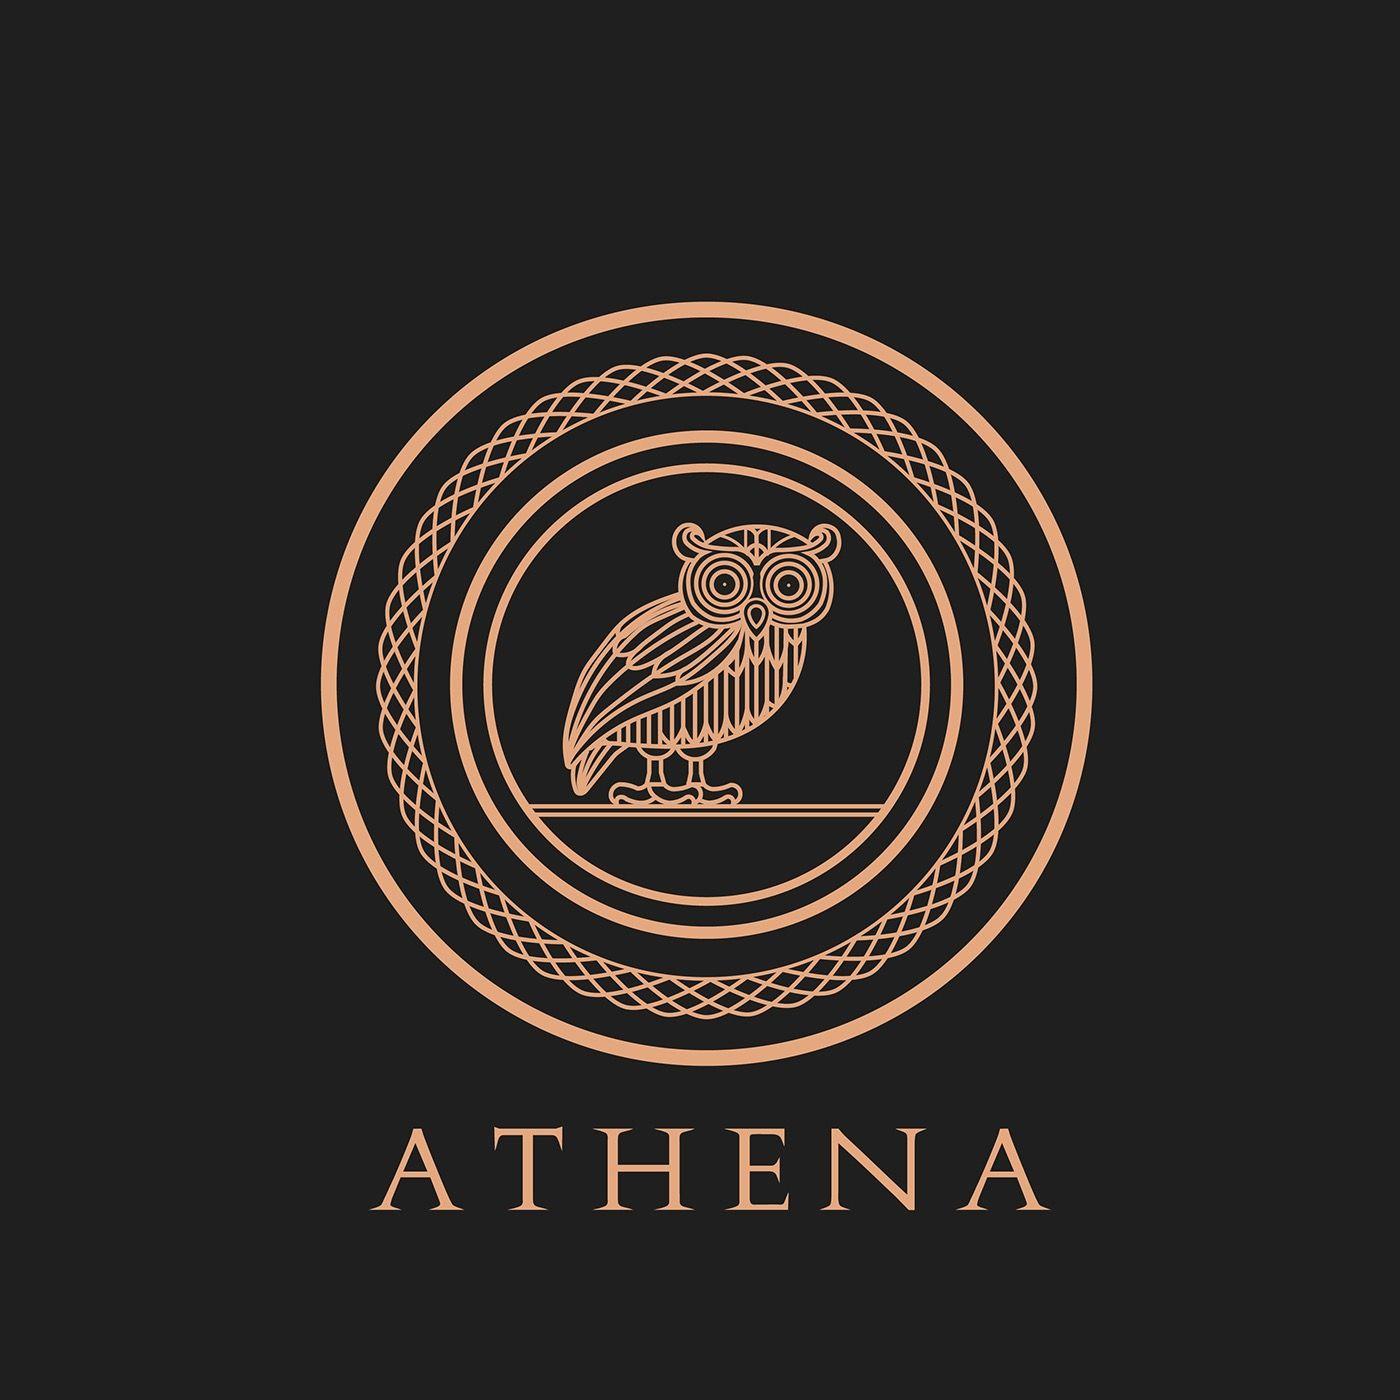 Athena Owl Logo - The Owl of Athena on Behance